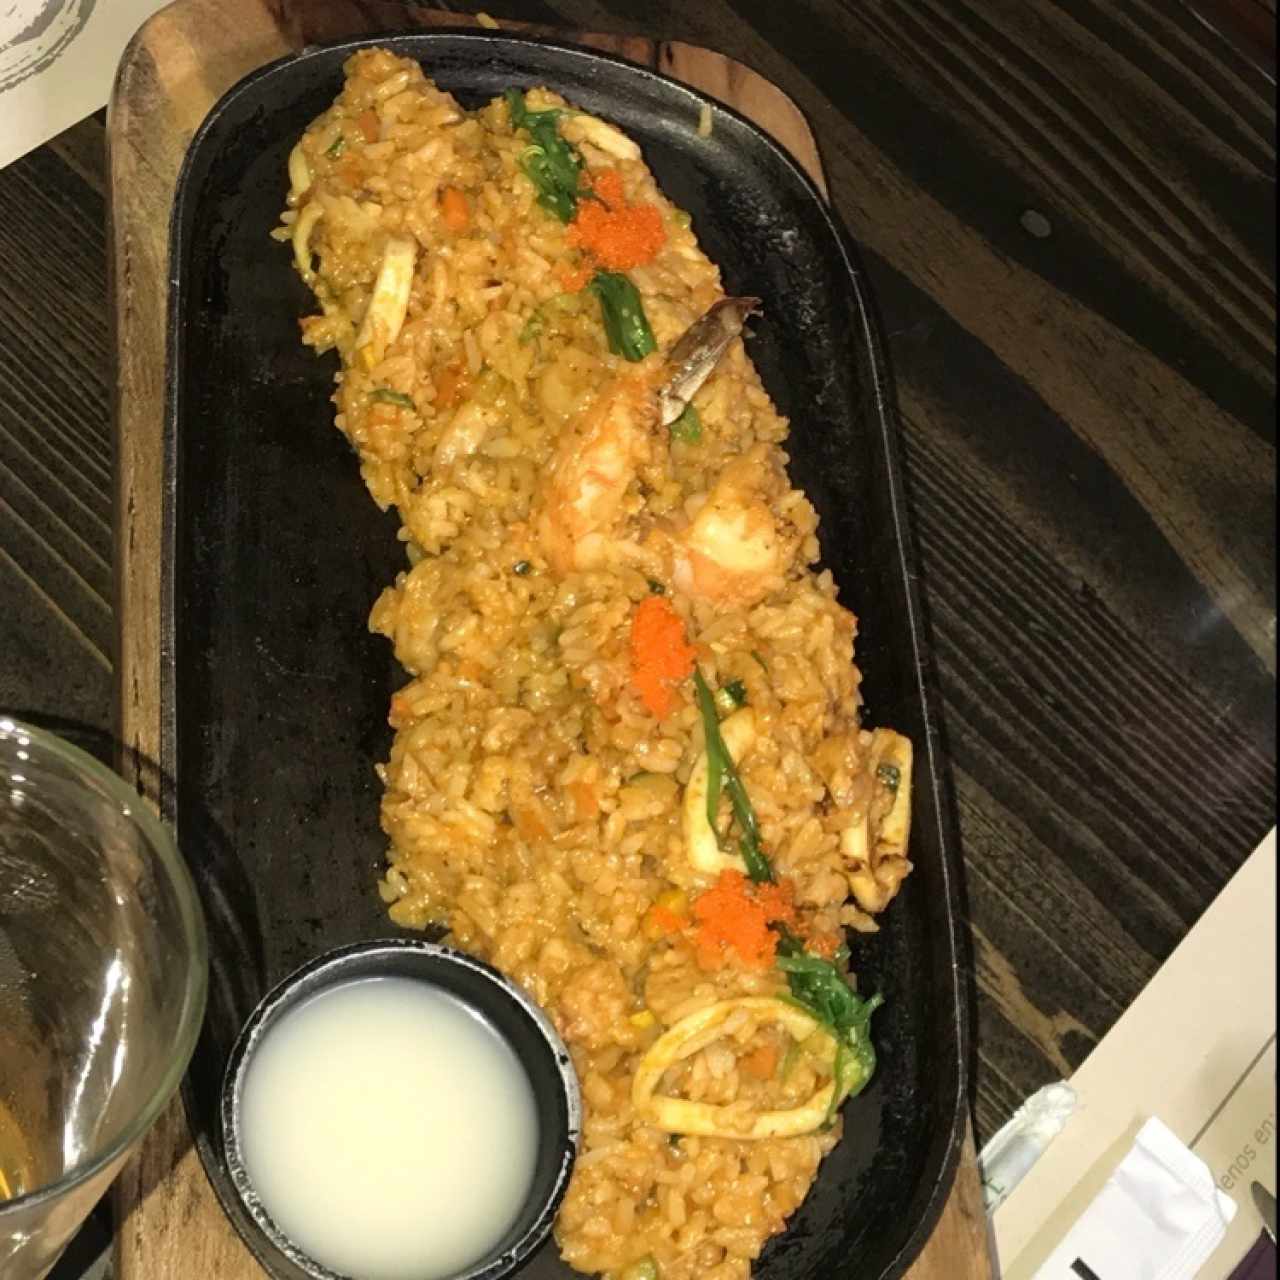 arroz con mariscos, increible, lo mejor!!!